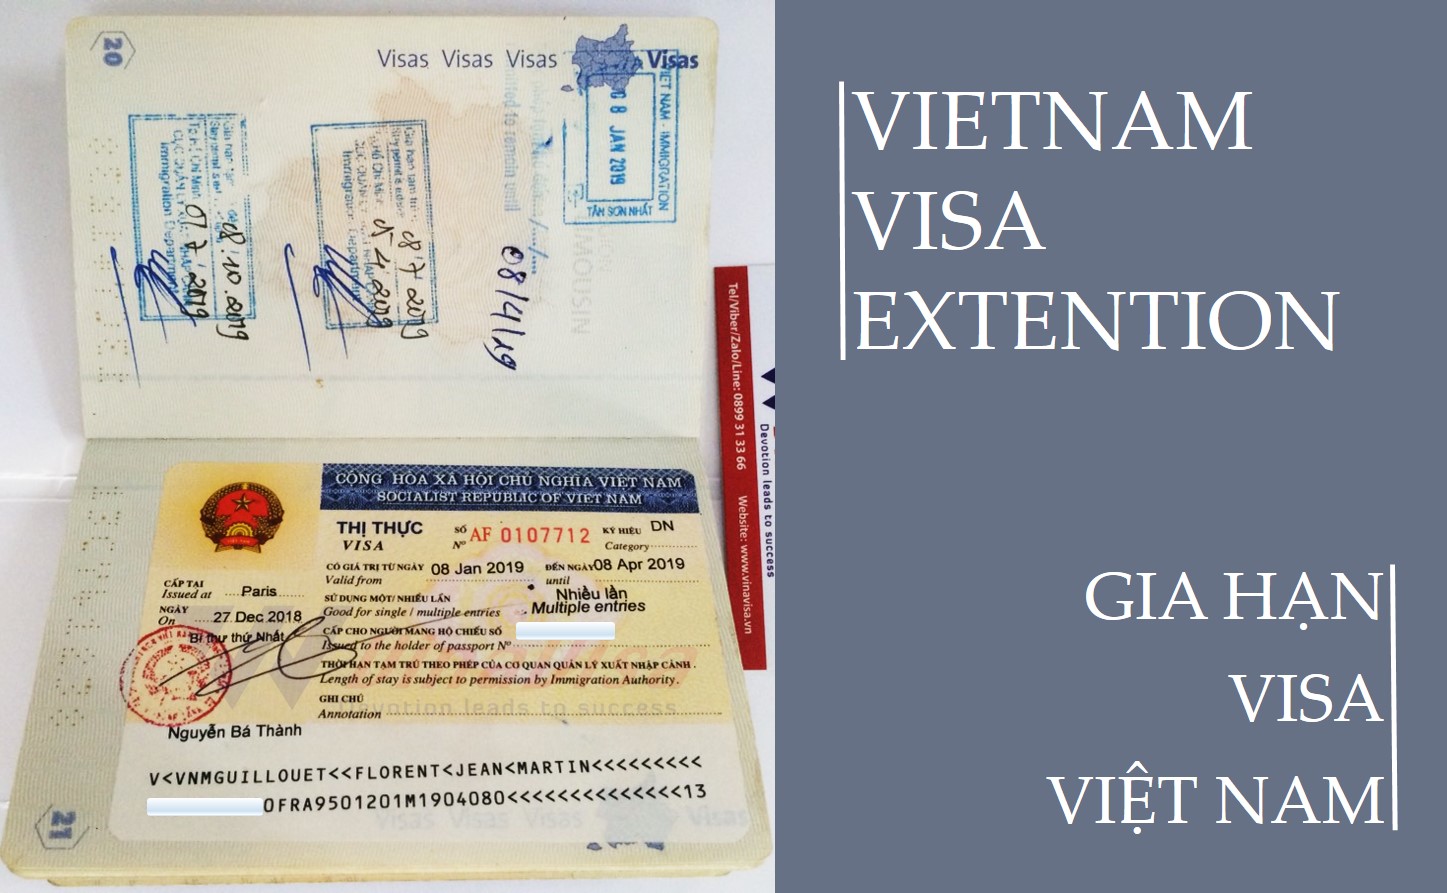 #1 Dịch vụ Gia Hạn Visa Việt Nam tại Đà Nẵng